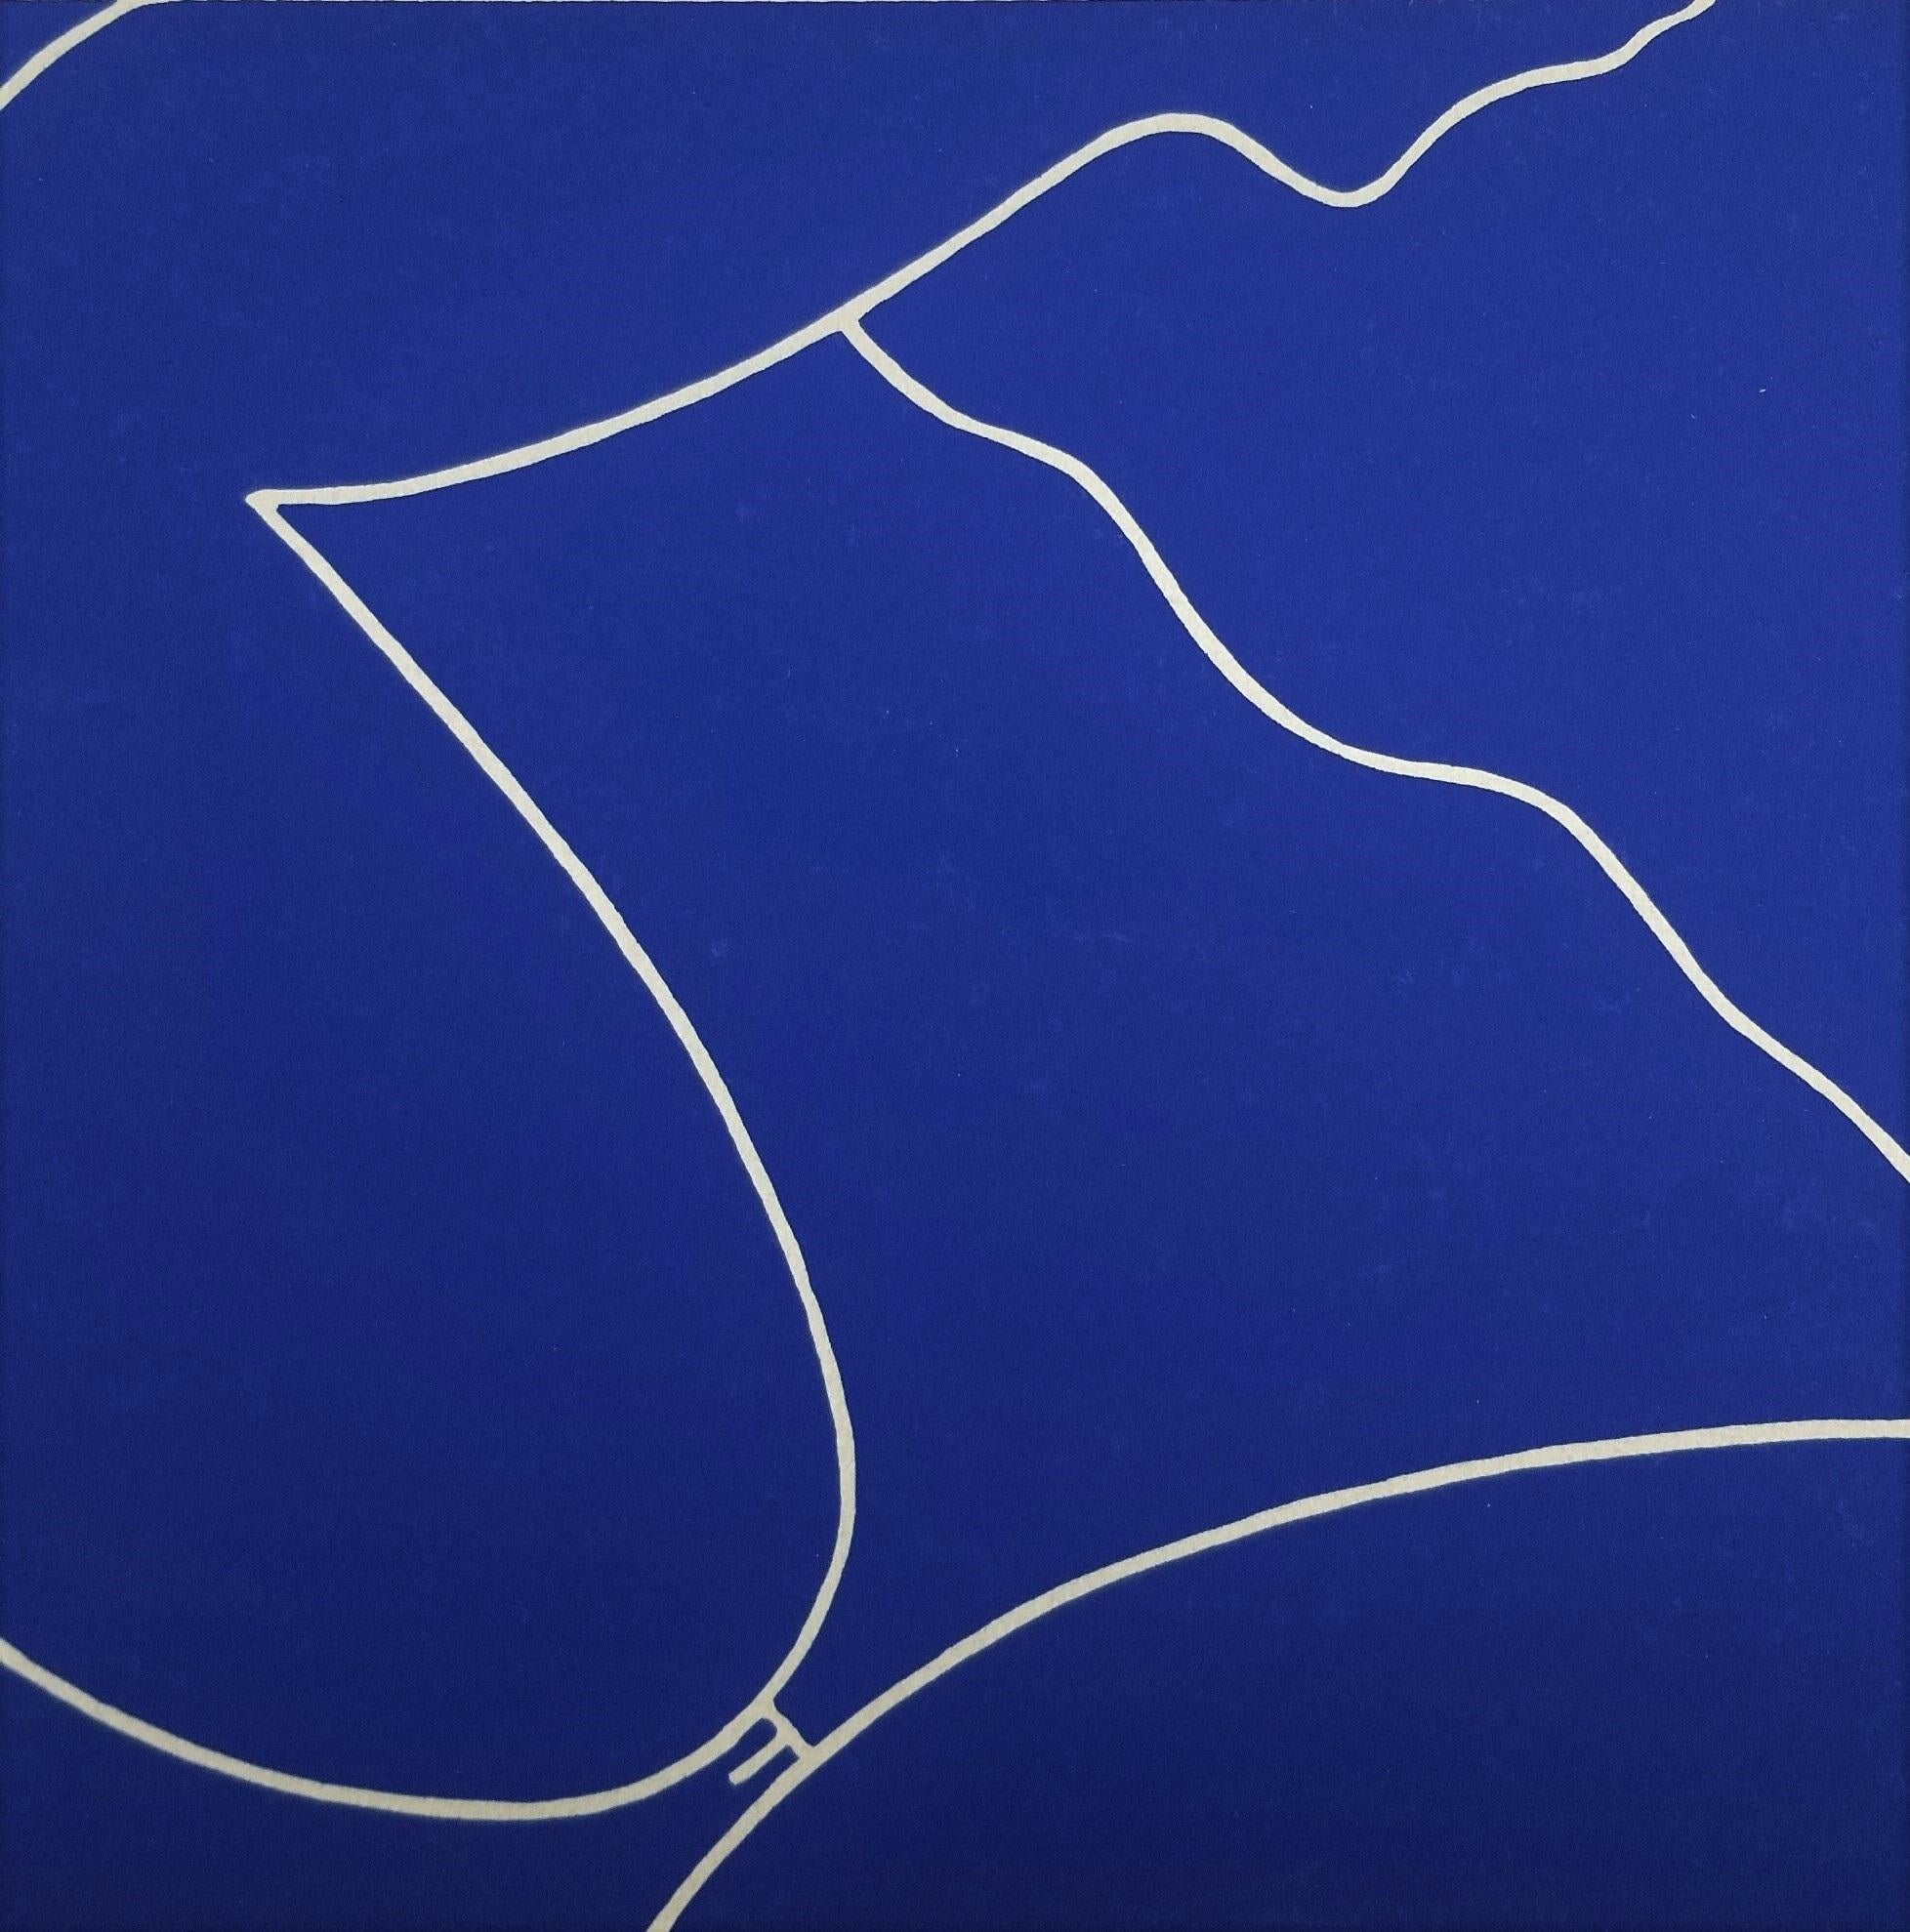 Dan May Nude Print - Reclining Nude (Blue) II /// Contemporary Pop Art Figurative Minimal Screenprint